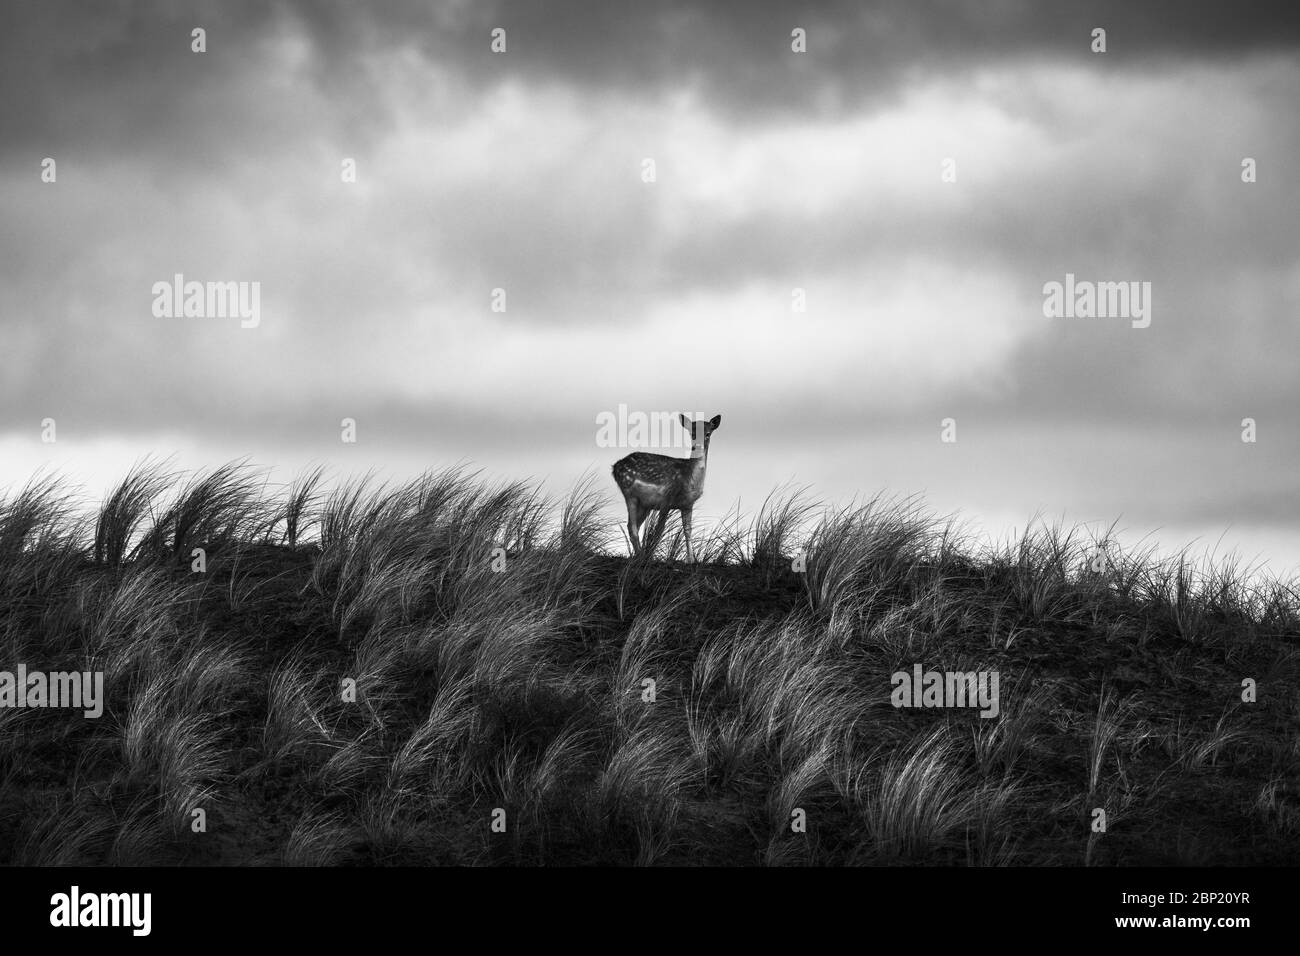 Zandvoort, Holanda, Amsterdam Coast, un retrato de silueta contra el cielo tormentoso de un ciervo barbecho europeo en un lado de la colina verde Foto de stock